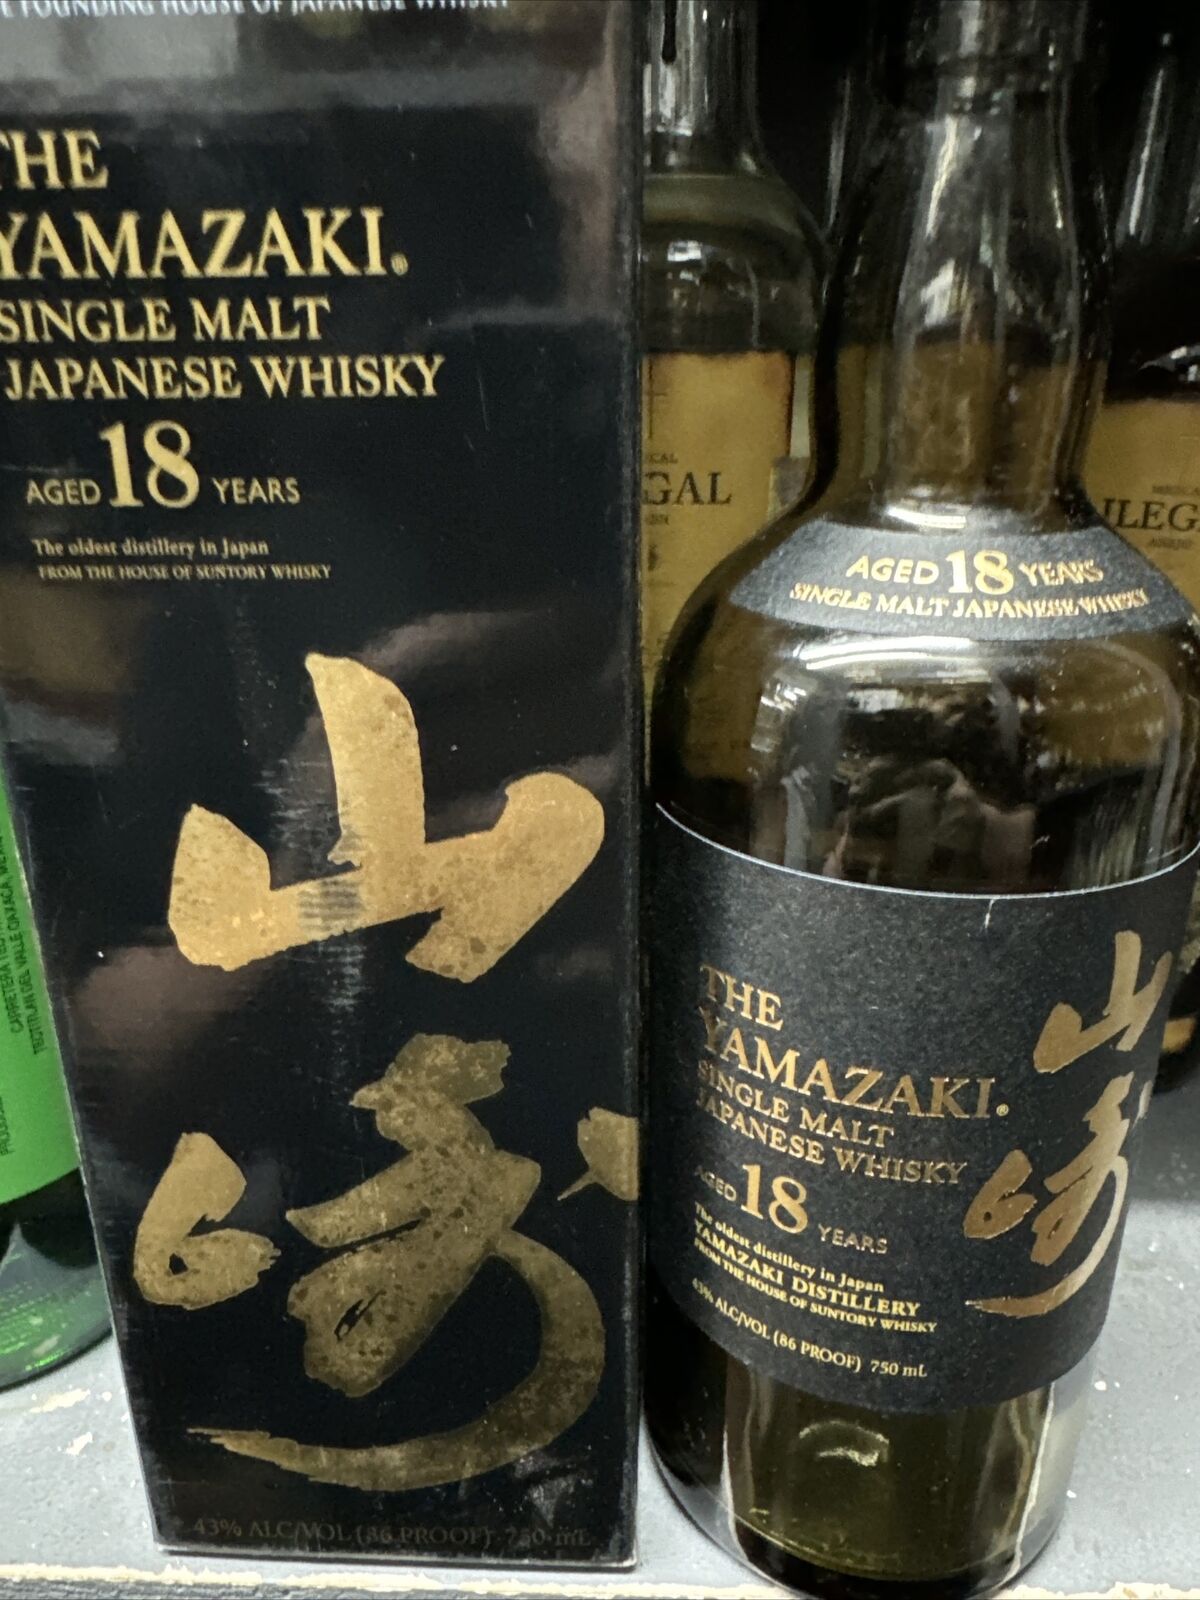 The Yamazaki Aged 18 Years Japanese Single Malt Whisky - EMPTY bottle and box